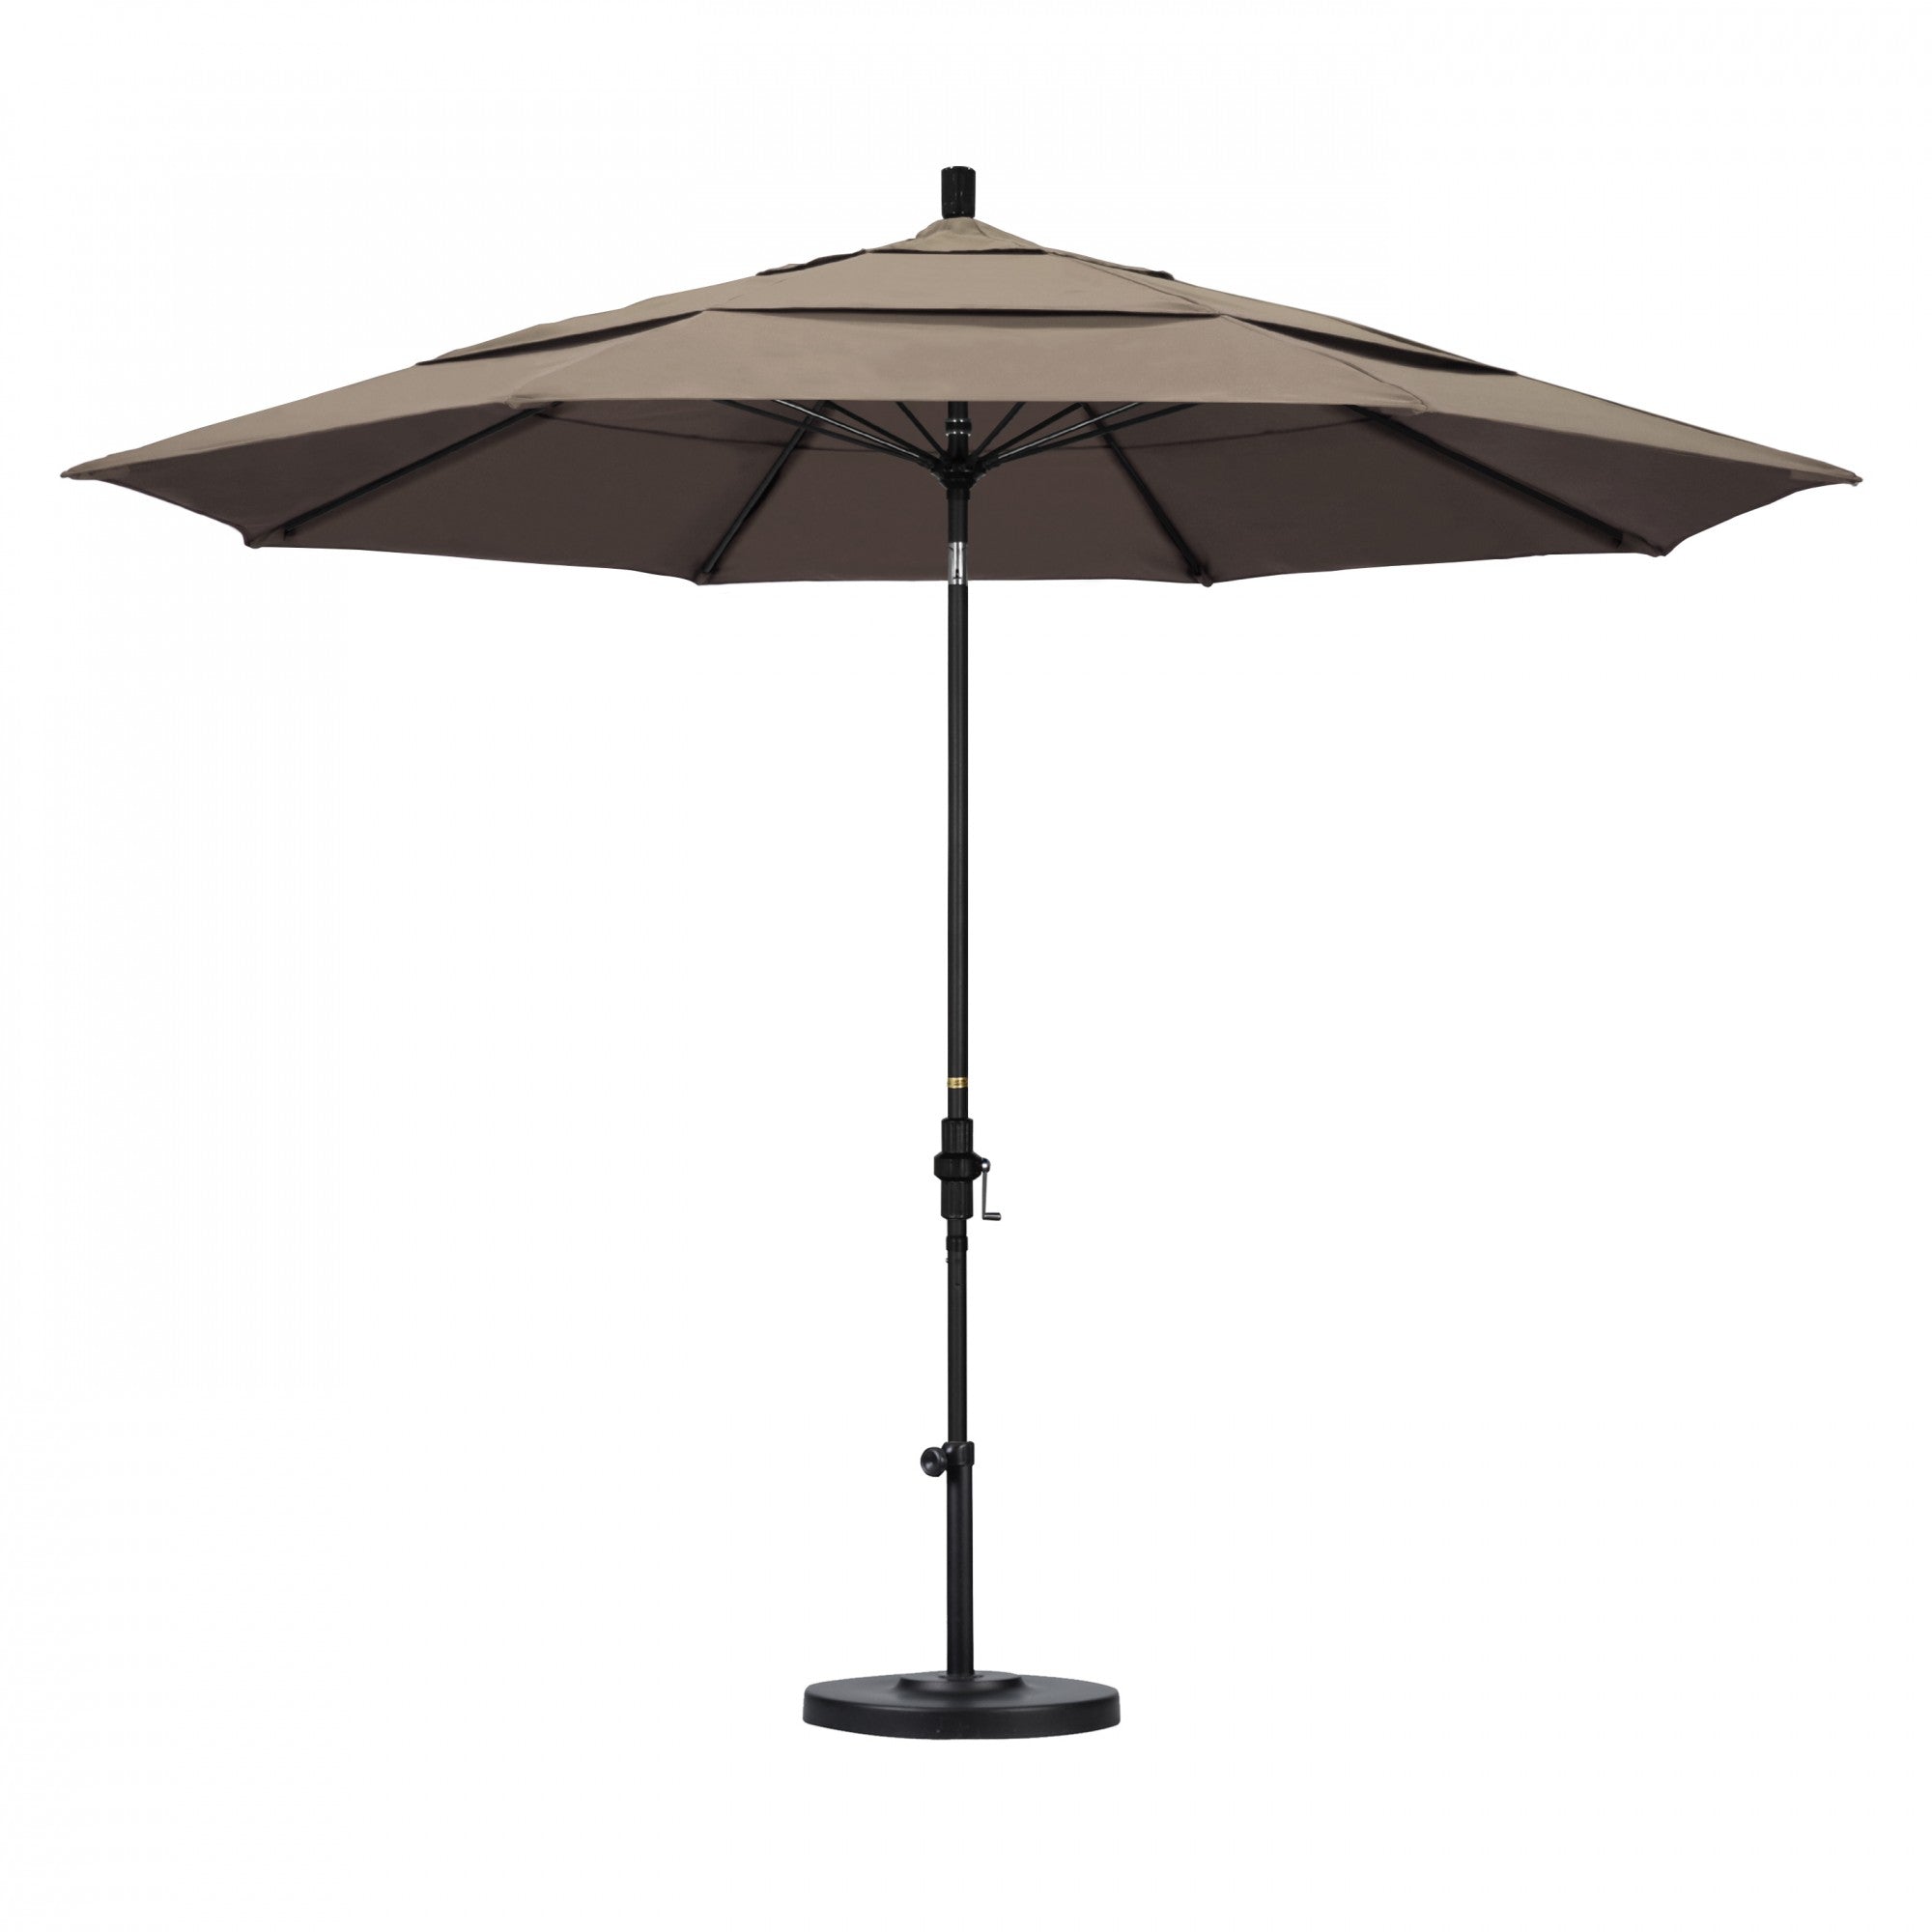 California Umbrella - 11' - Patio Umbrella Umbrella - Aluminum Pole - Taupe - Sunbrella  - GSCUF118705-5461-DWV